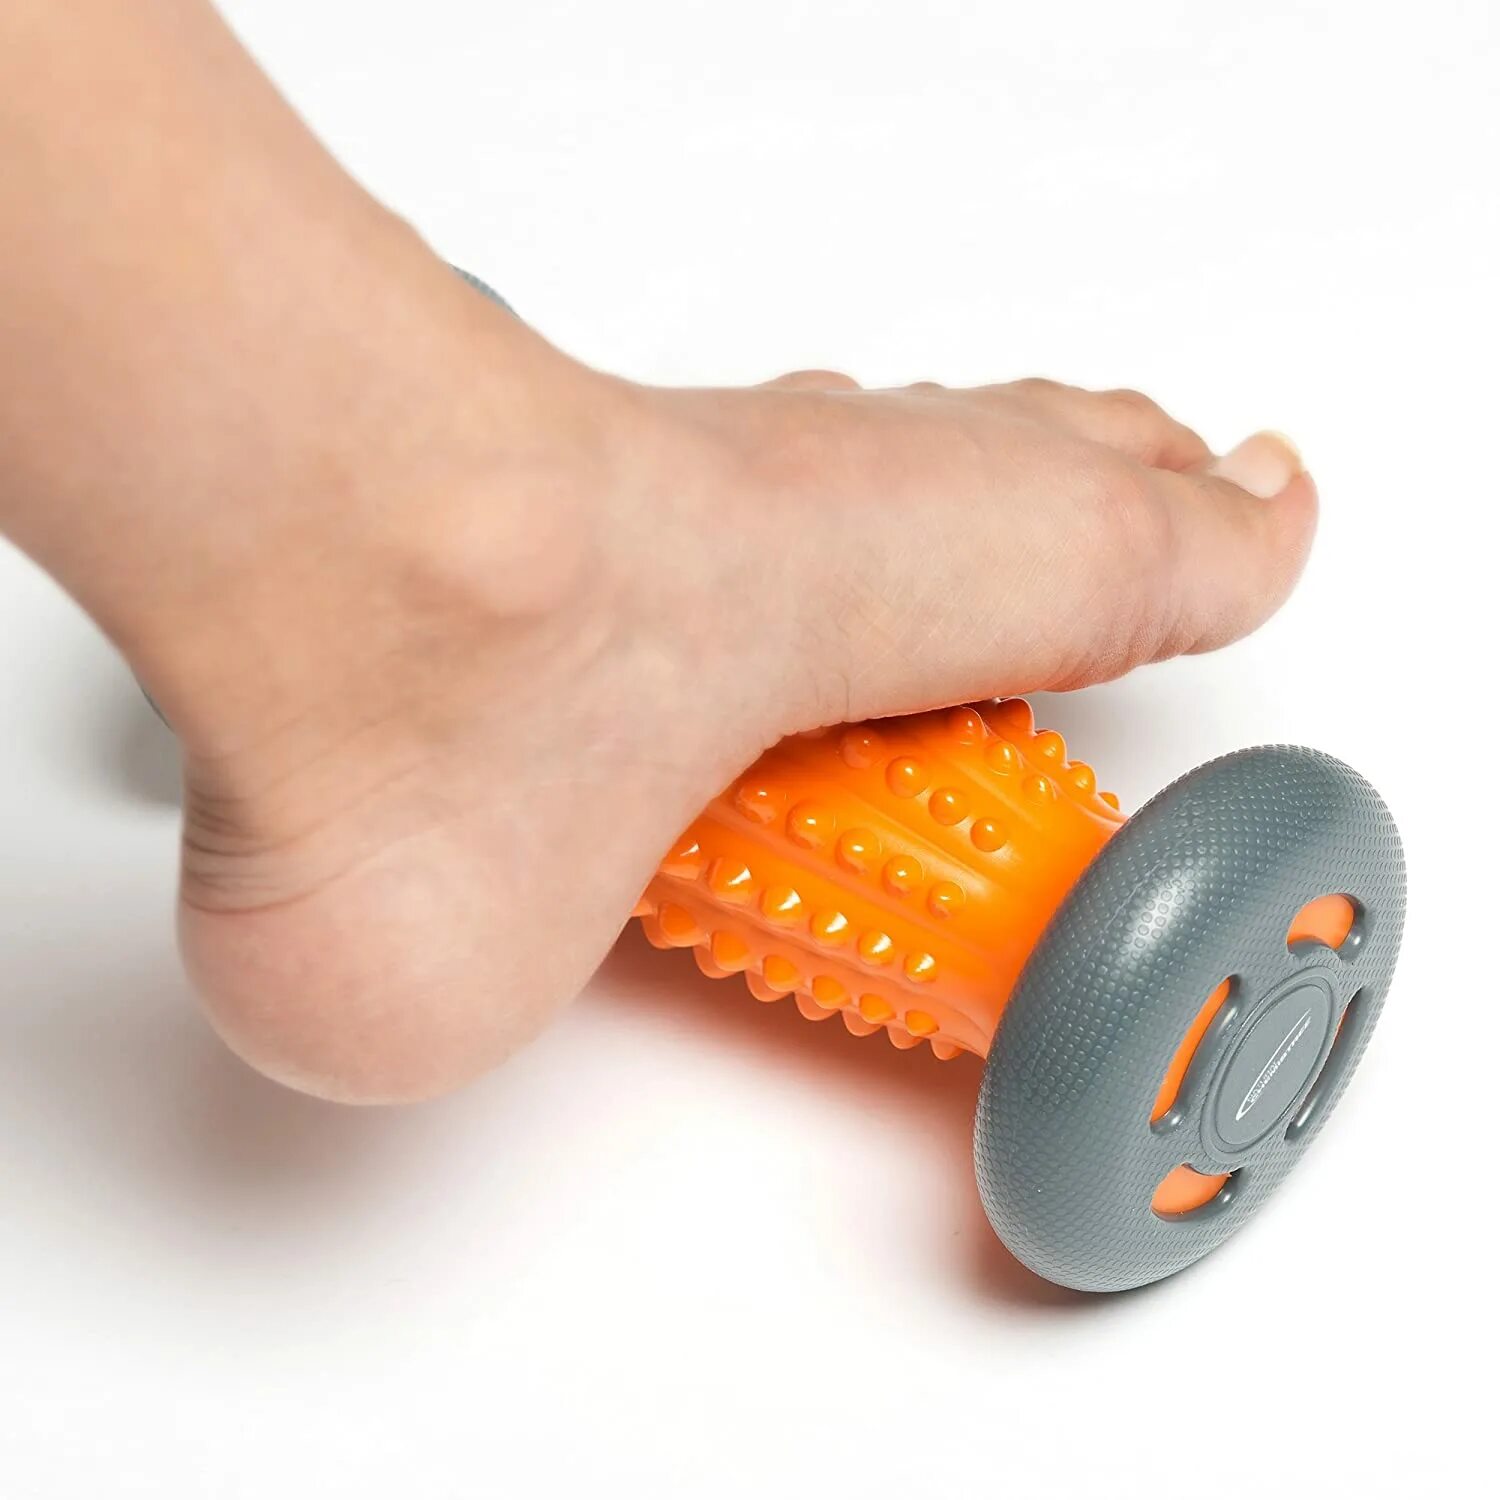 Роликовый массажер. Массажный ролик. Роллер электрический массажный. Массажер для ног (роликовый) pure2improve Crystal footroller.